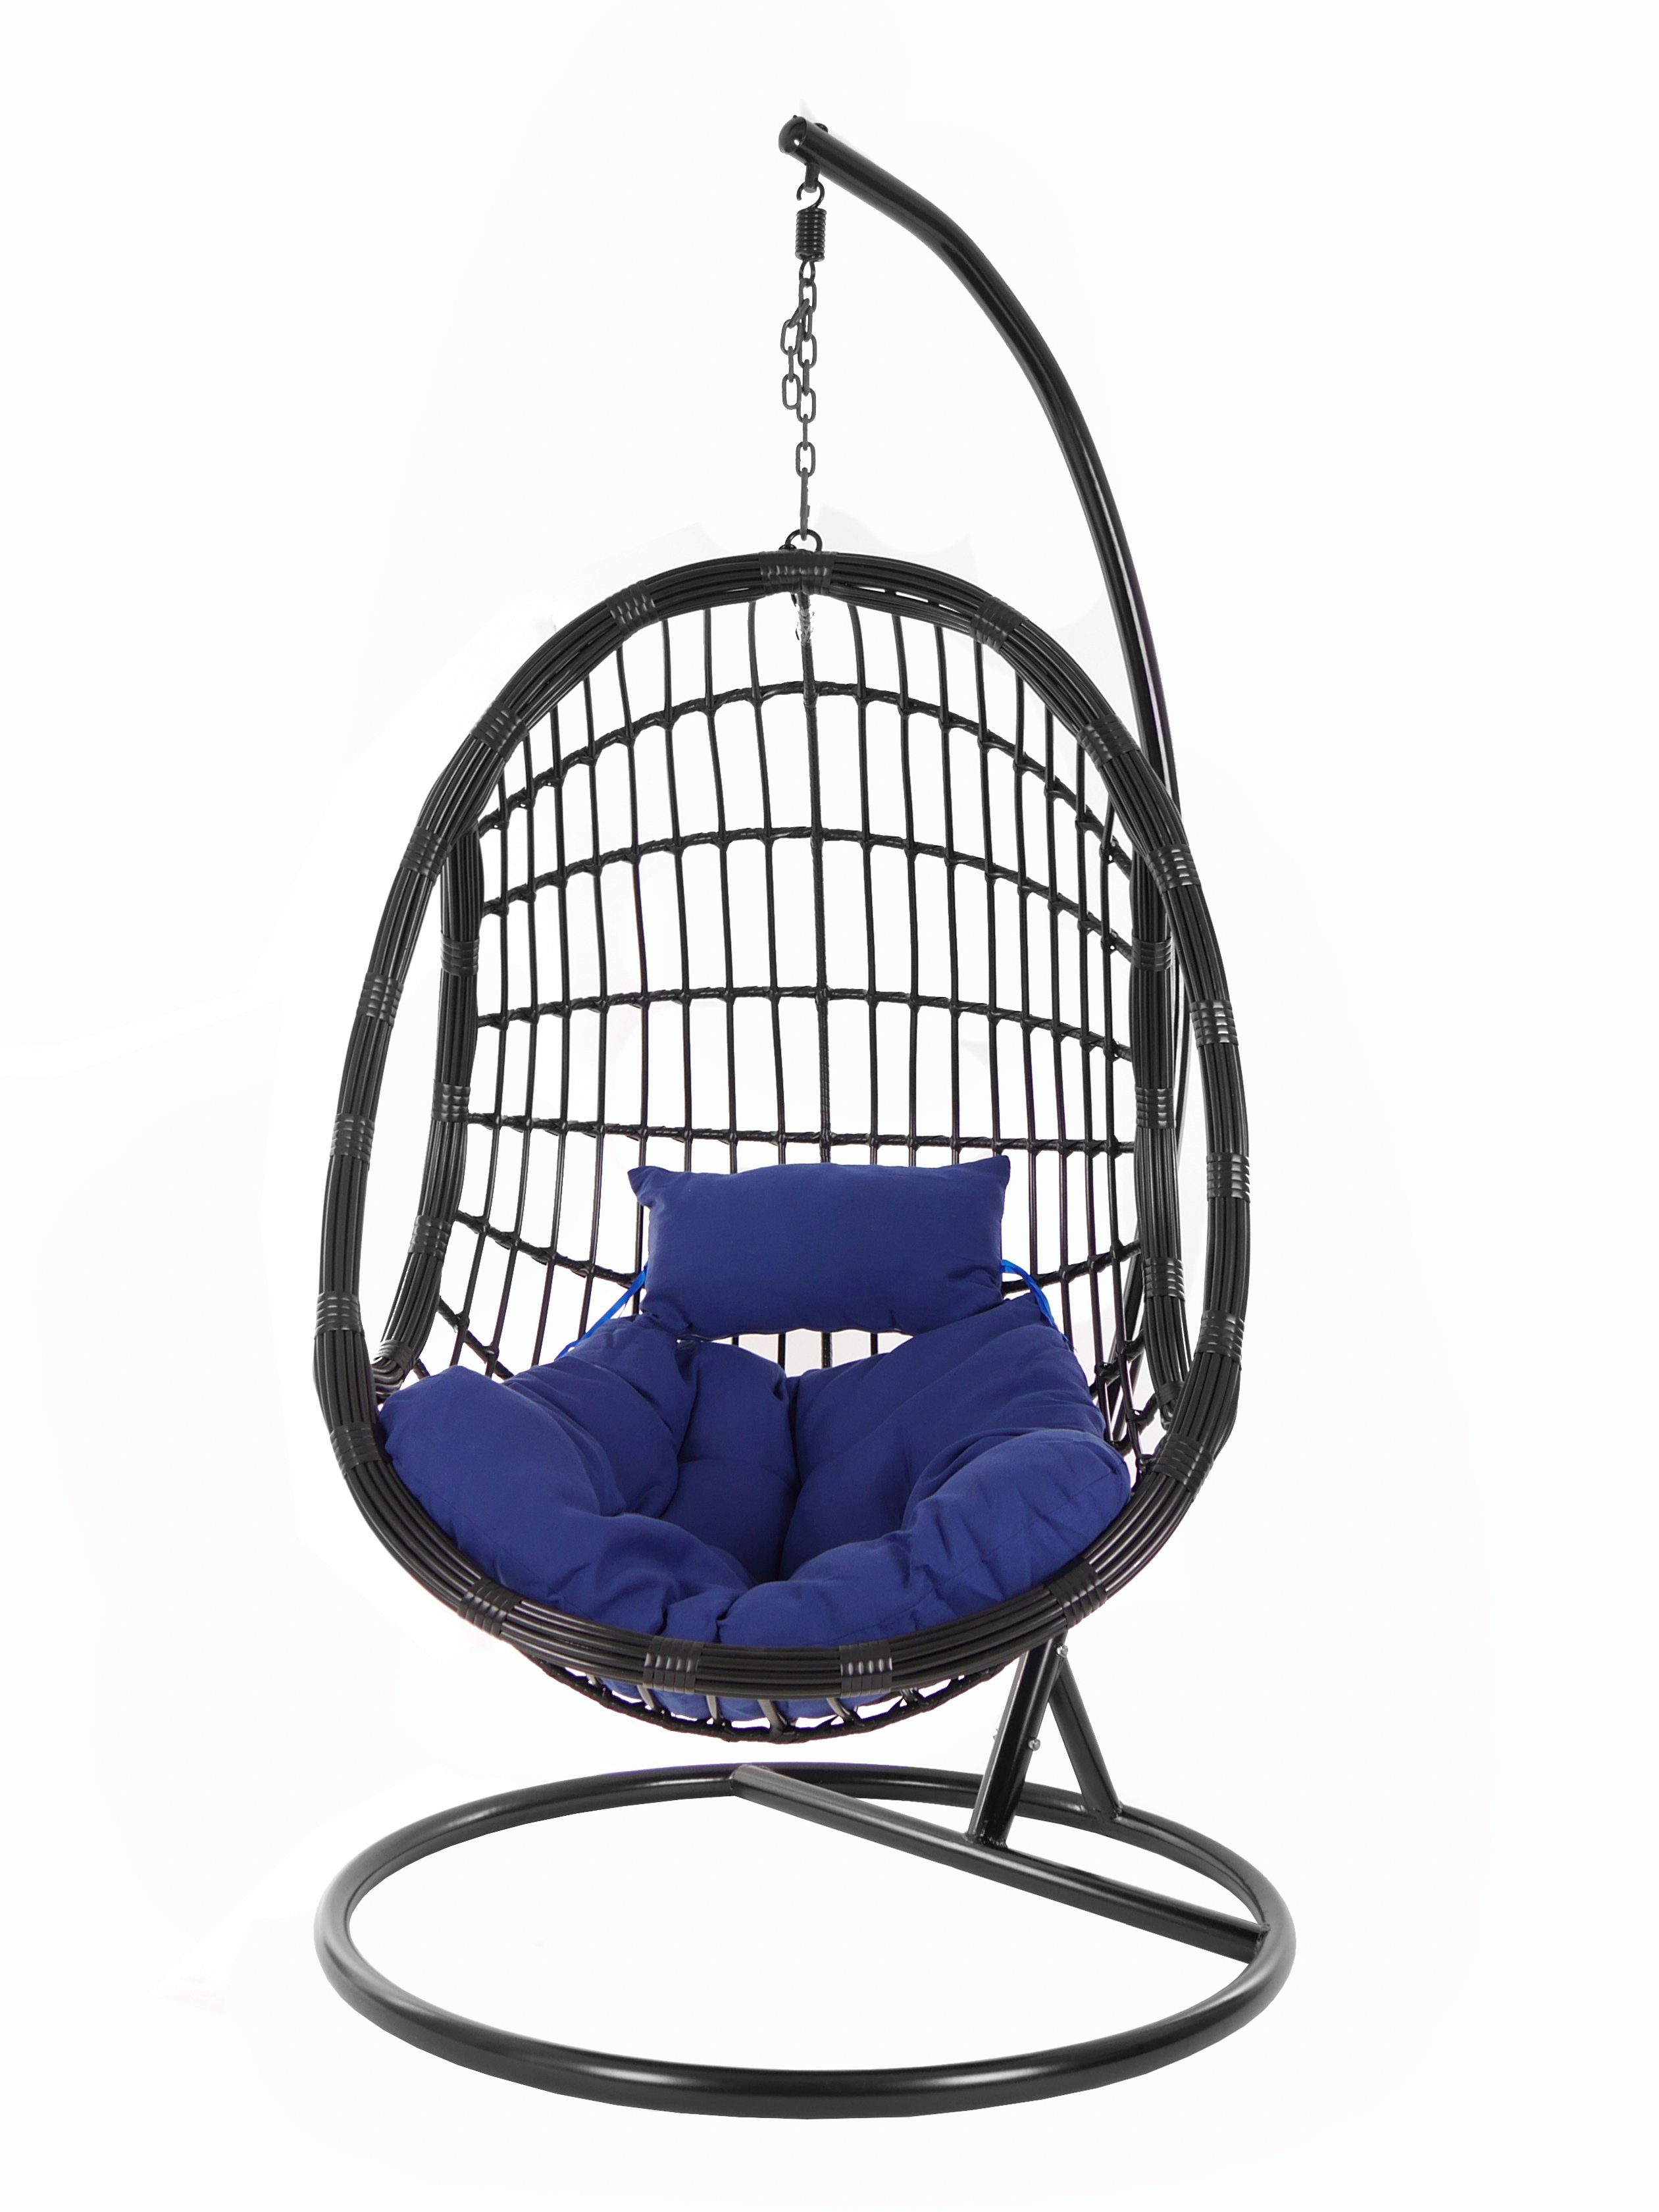 KIDEO schwarz, (5900 Kissen, und dunkelblau black, Hängesessel mit Loungemöbel, edles Chair, Gestell Design Swing Hängesessel PALMANOVA navy) Schwebesessel,